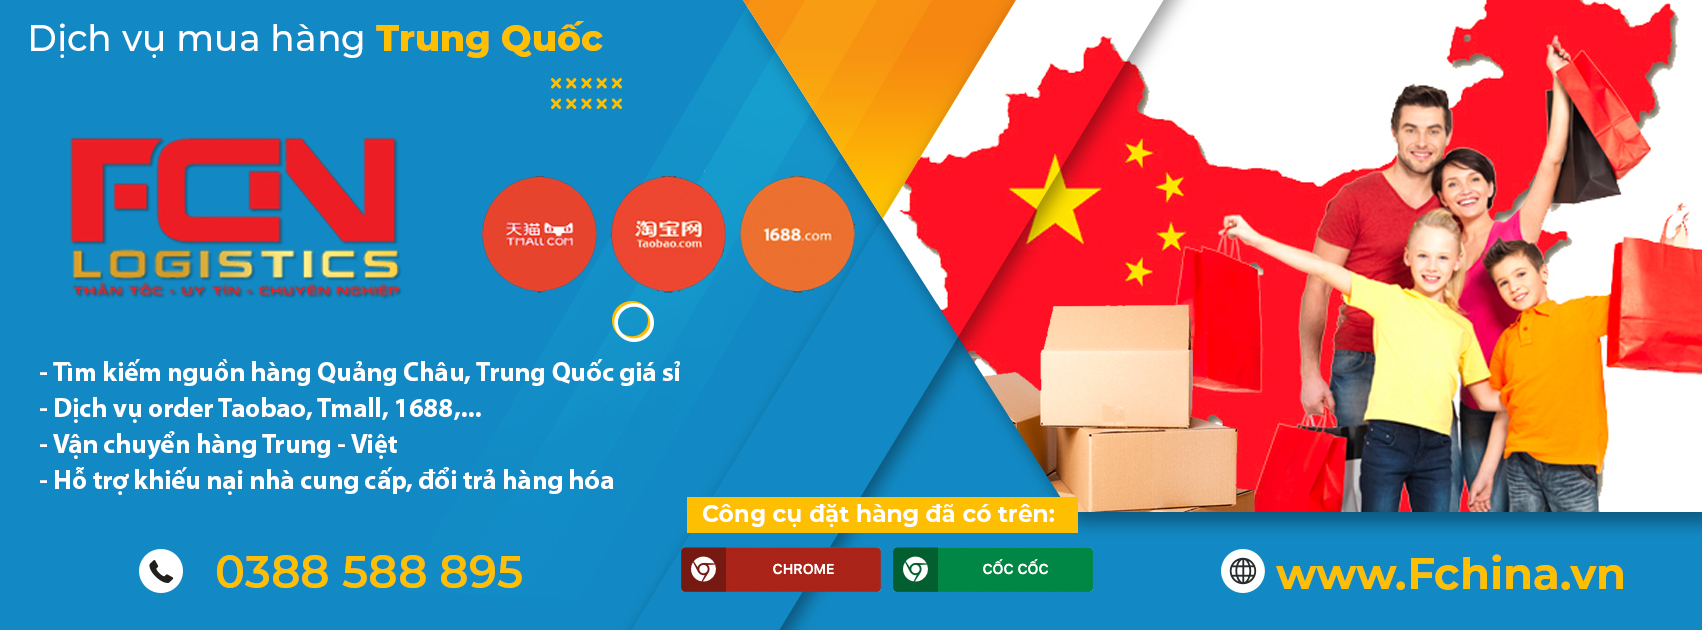 Dịch vụ ship hàng từ Trung Quốc về Việt Nam – Fchina